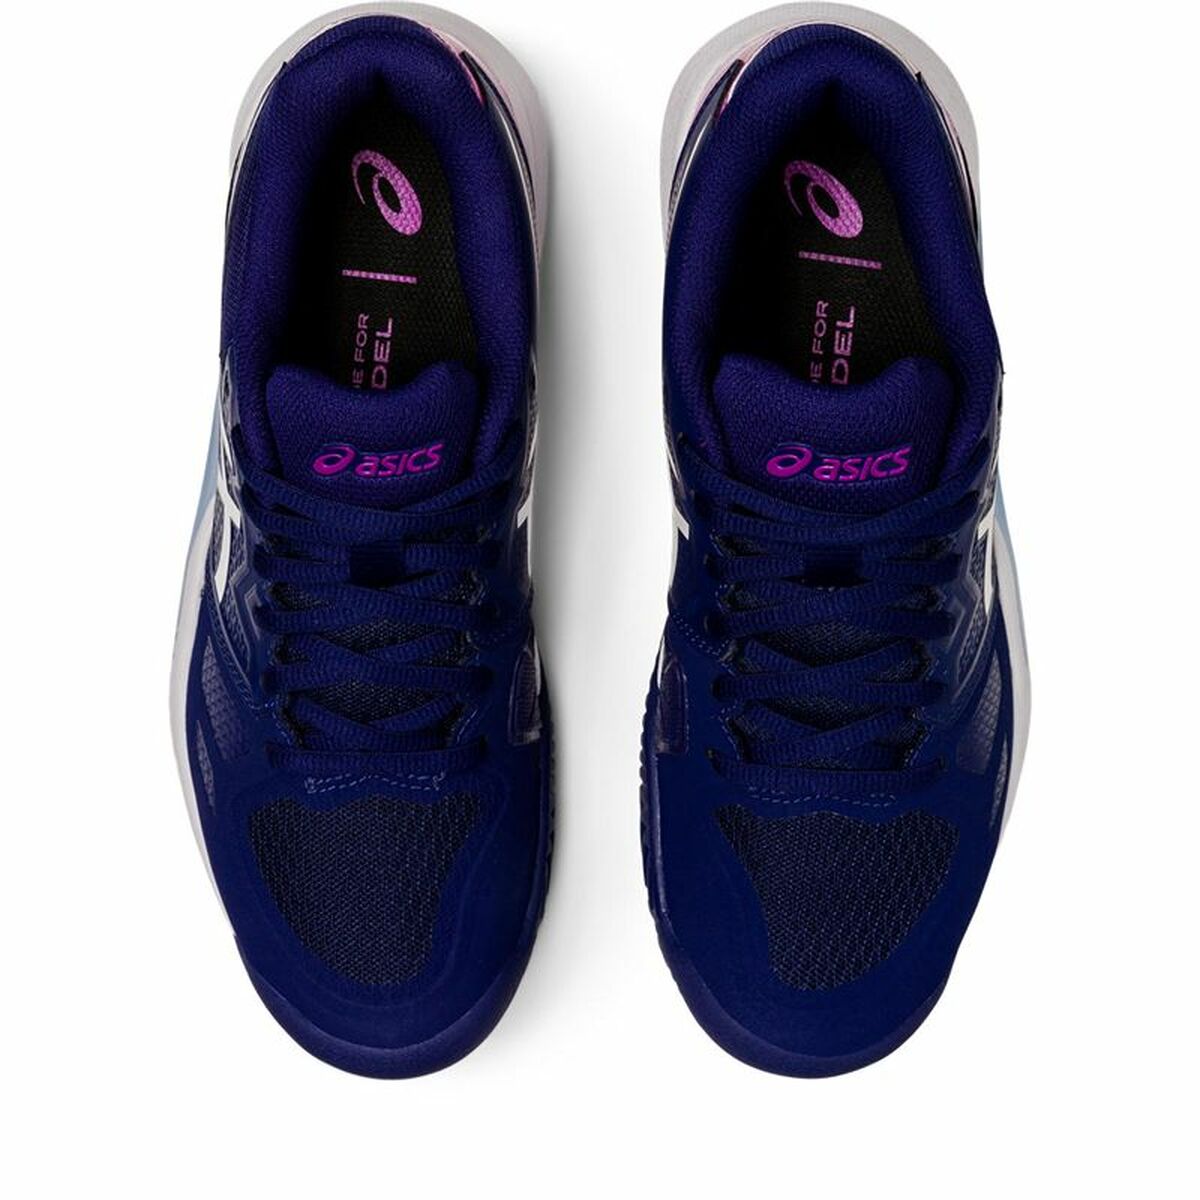 Women's Tennis Shoes Asics GEL-CHALLENGER 13 Blue